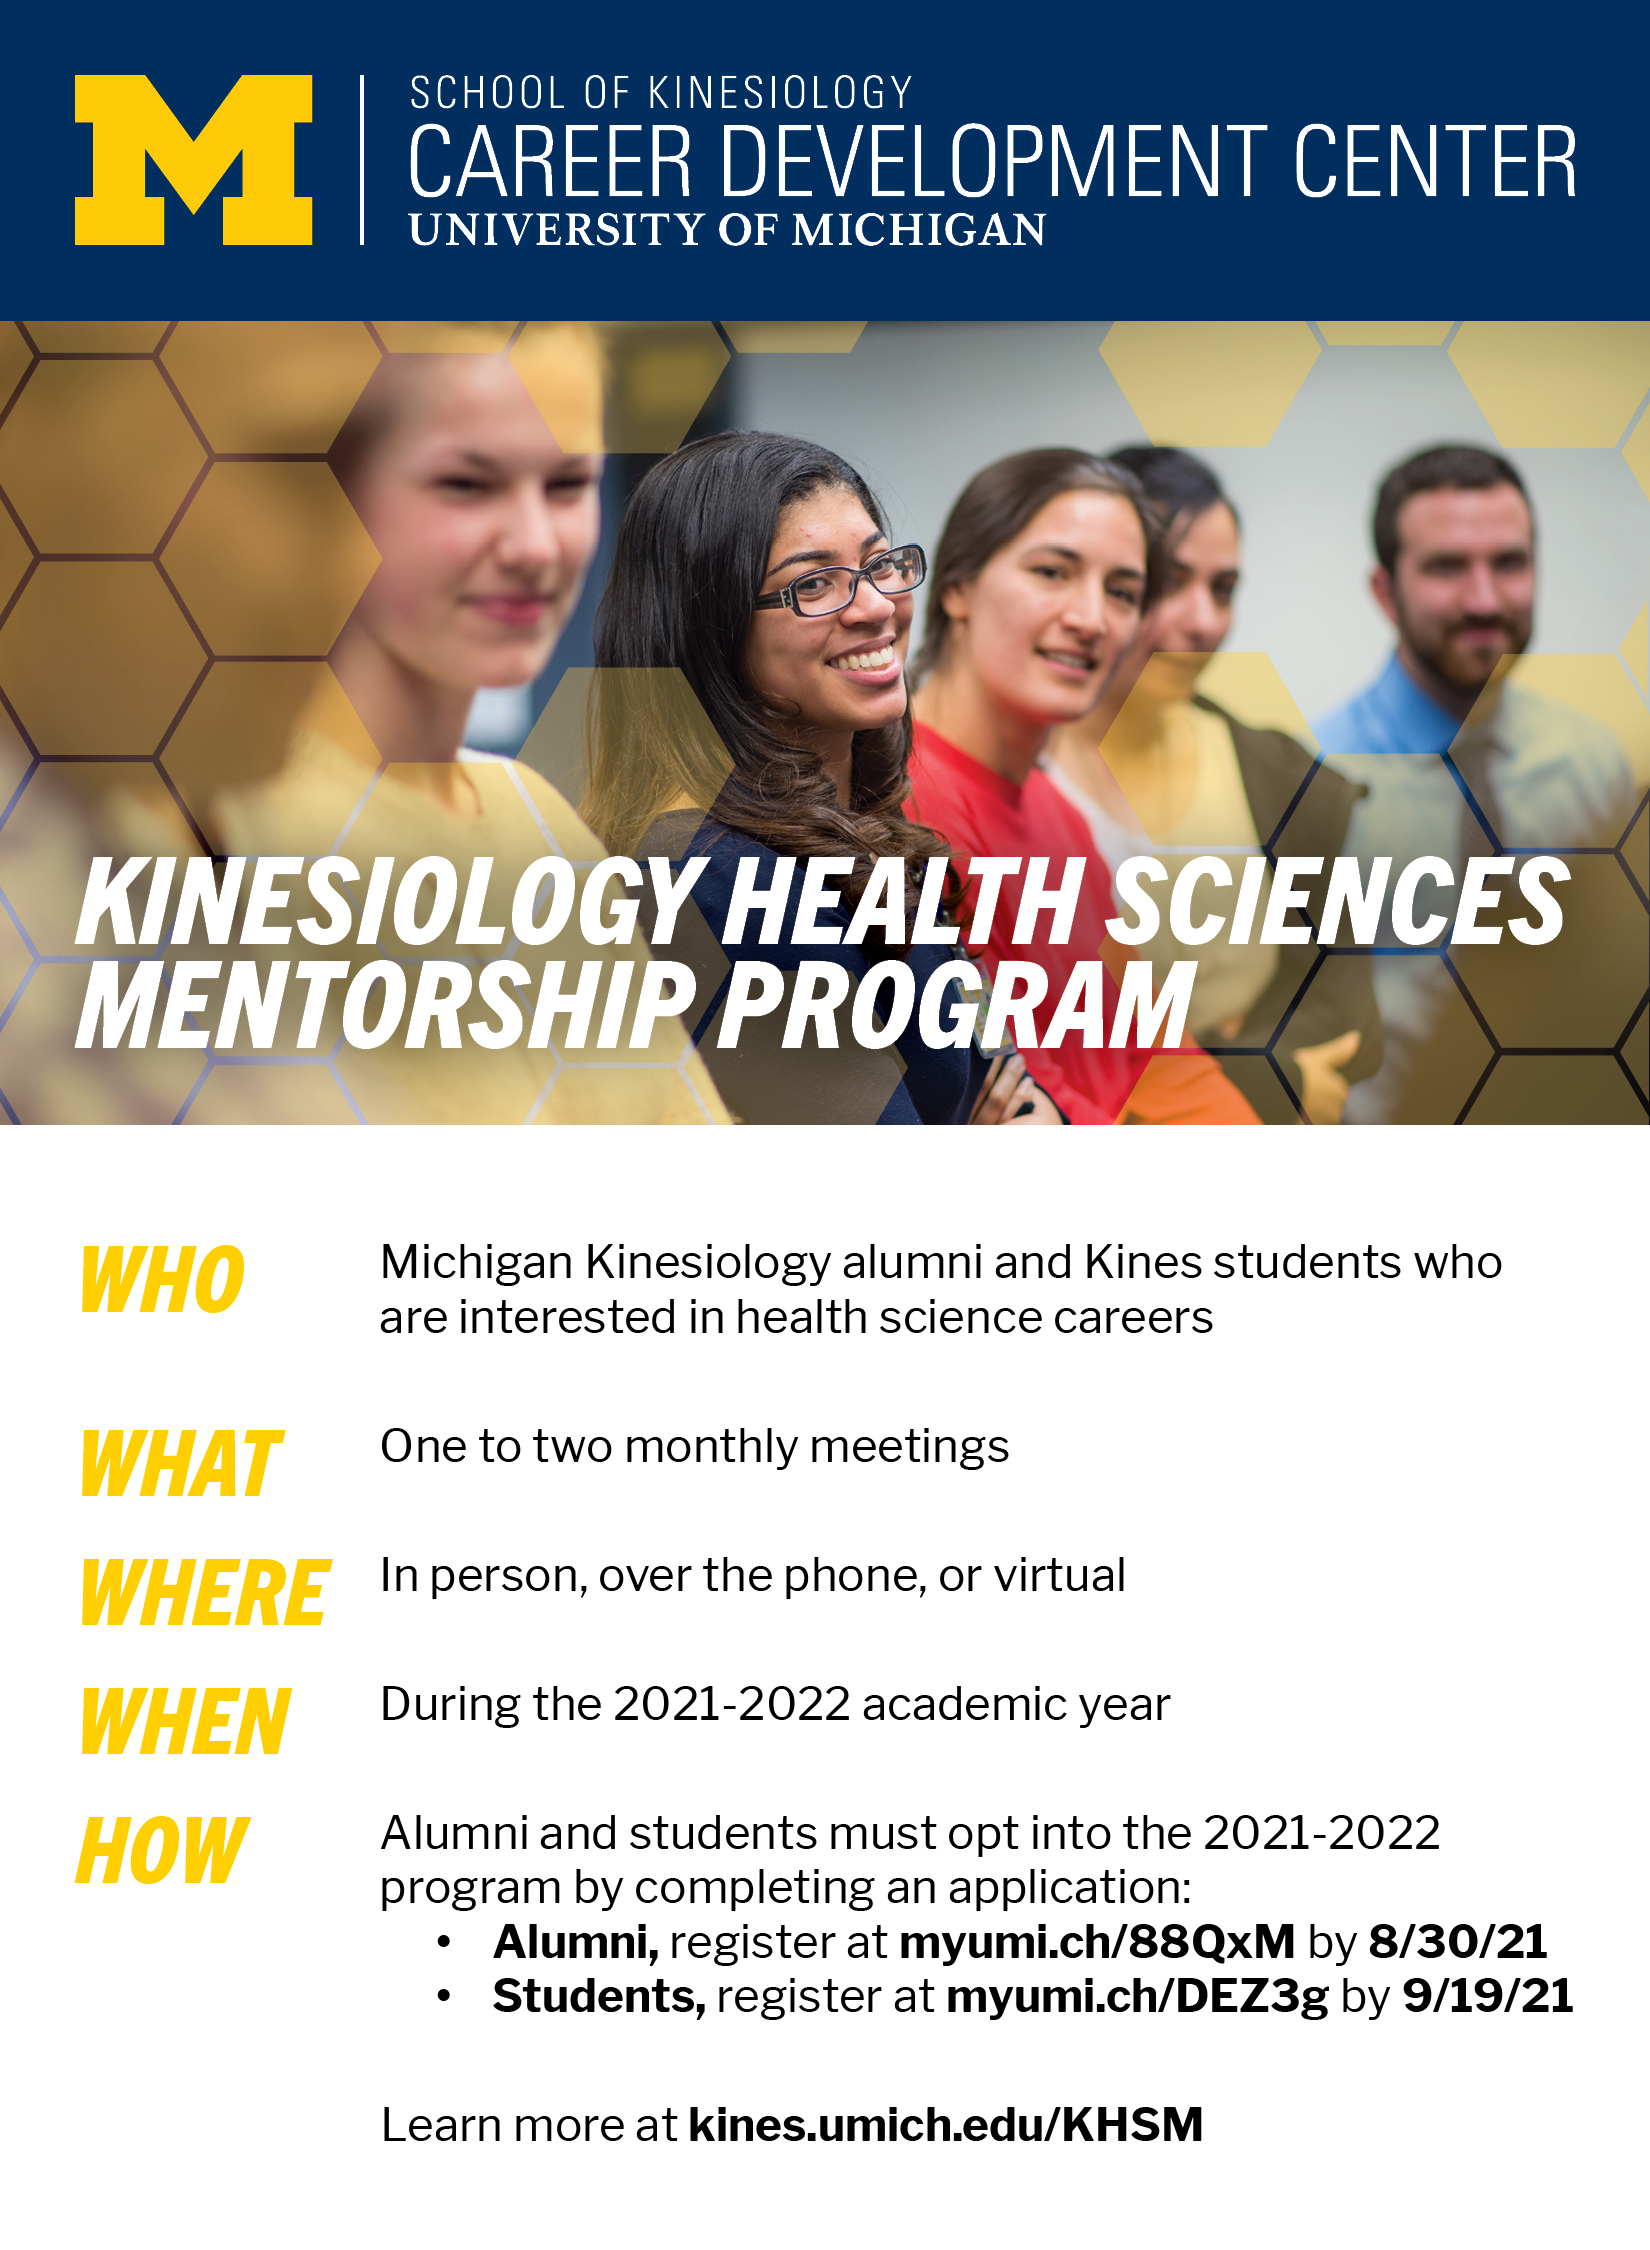 KHSM program details